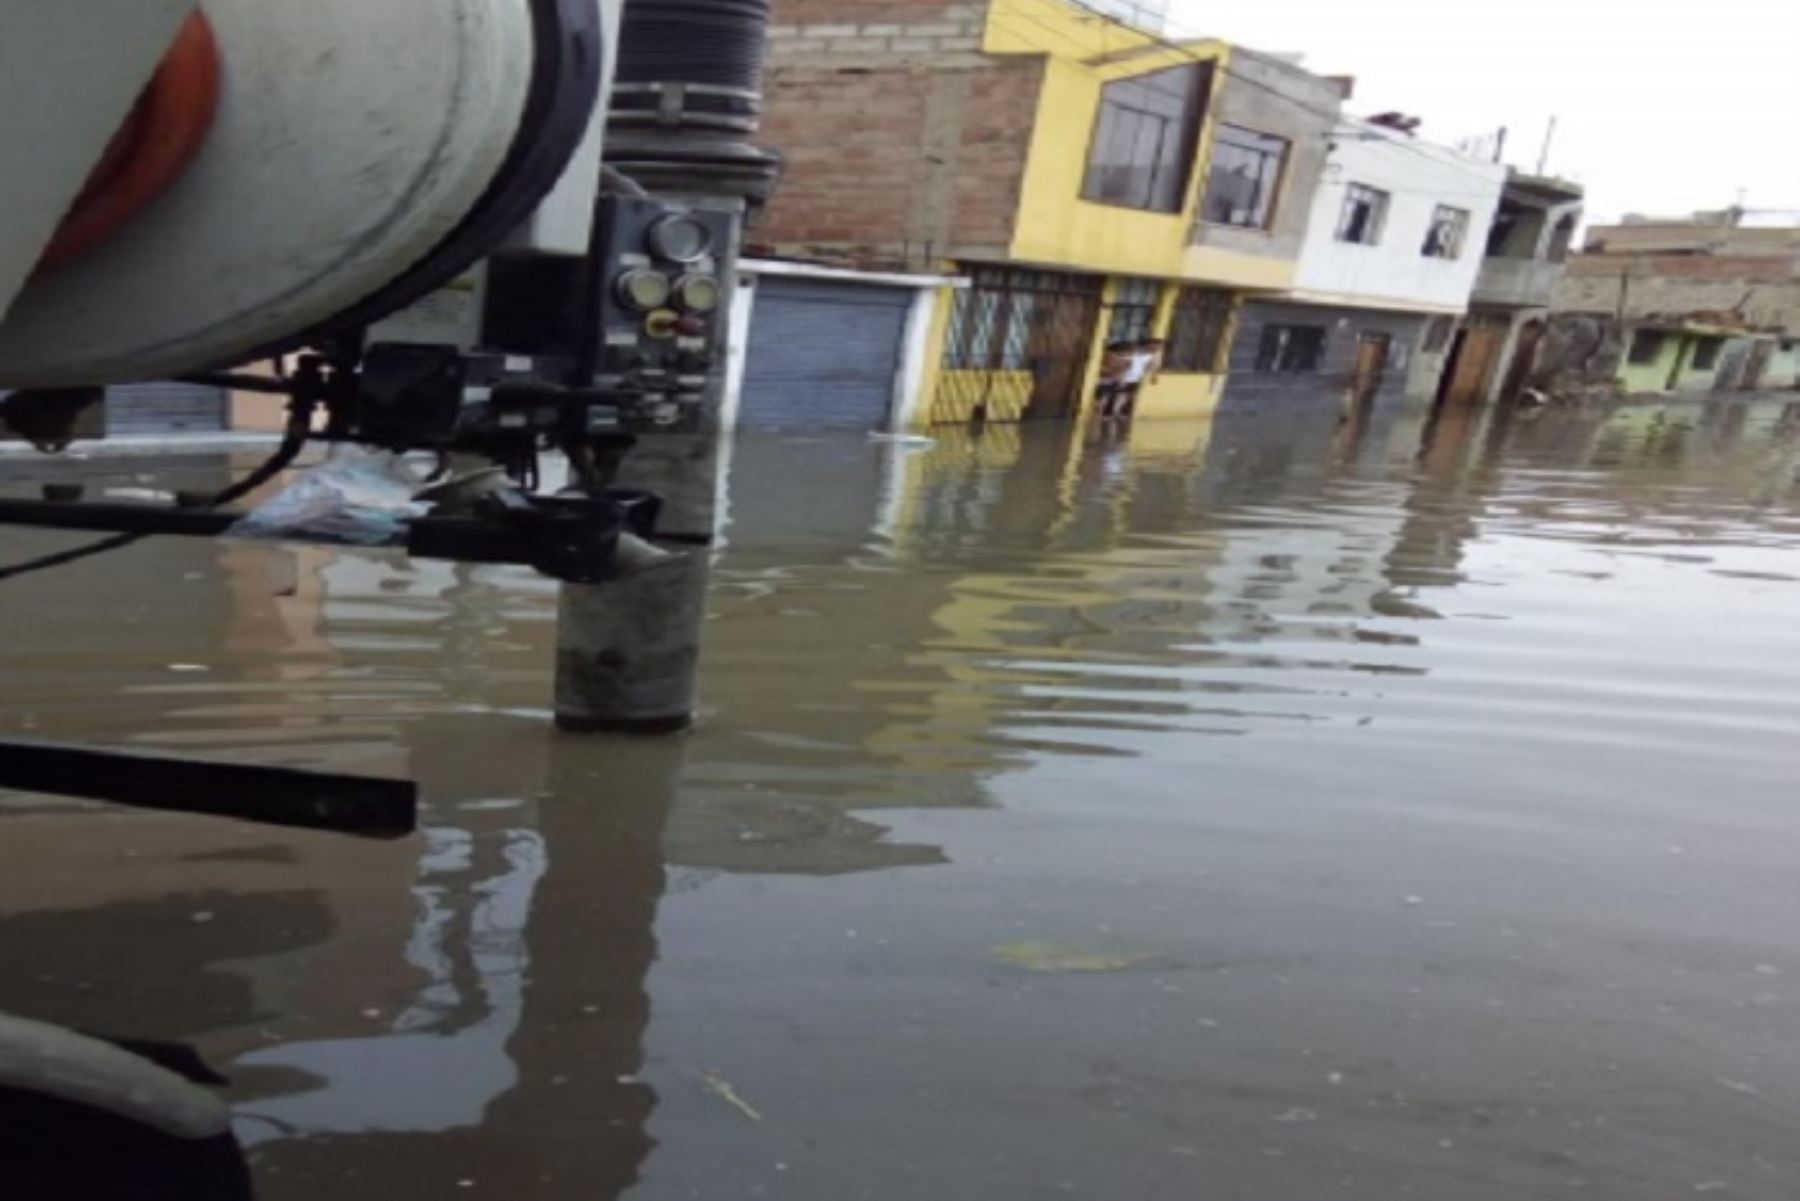 Lluvias intensas provocaron en la víspera la inundación de al menos 120 viviendas y afectación del sistema de alcantarillado en el distrito y provincia de Tacna, informó el Instituto Nacional de Defensa Civil (Indeci).